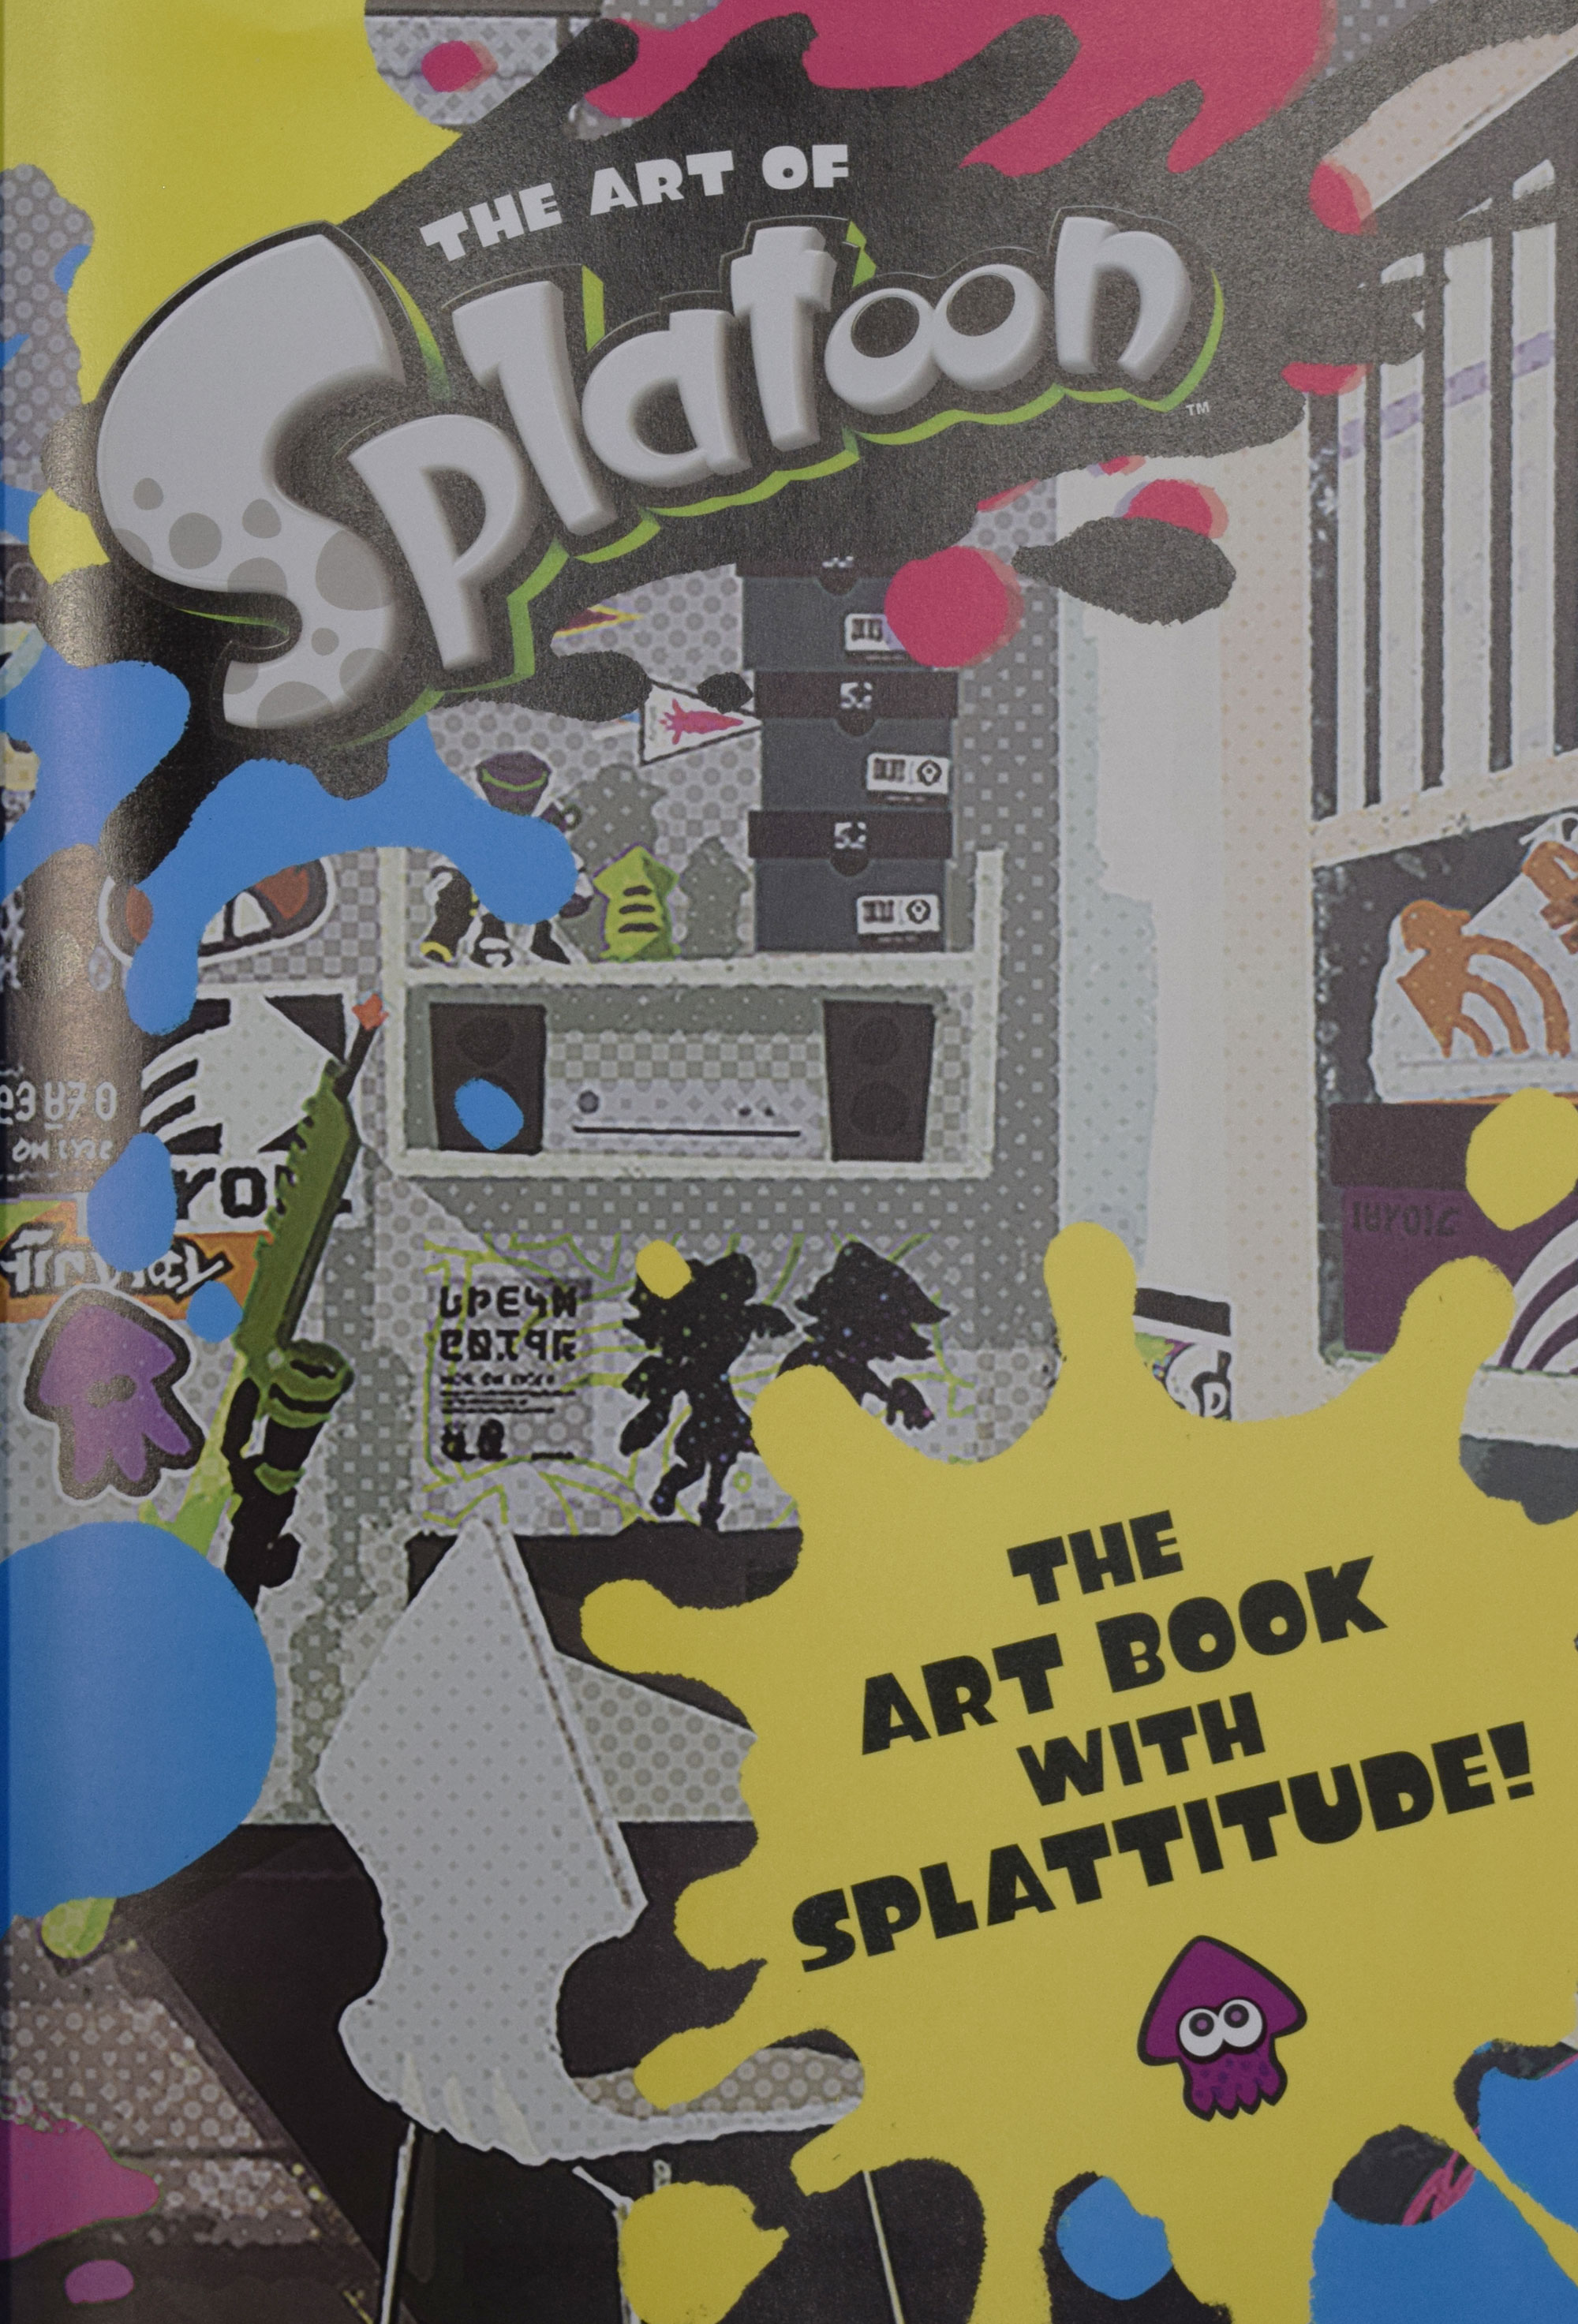 The Art of Splatoon. The Art Book with Splattitude!